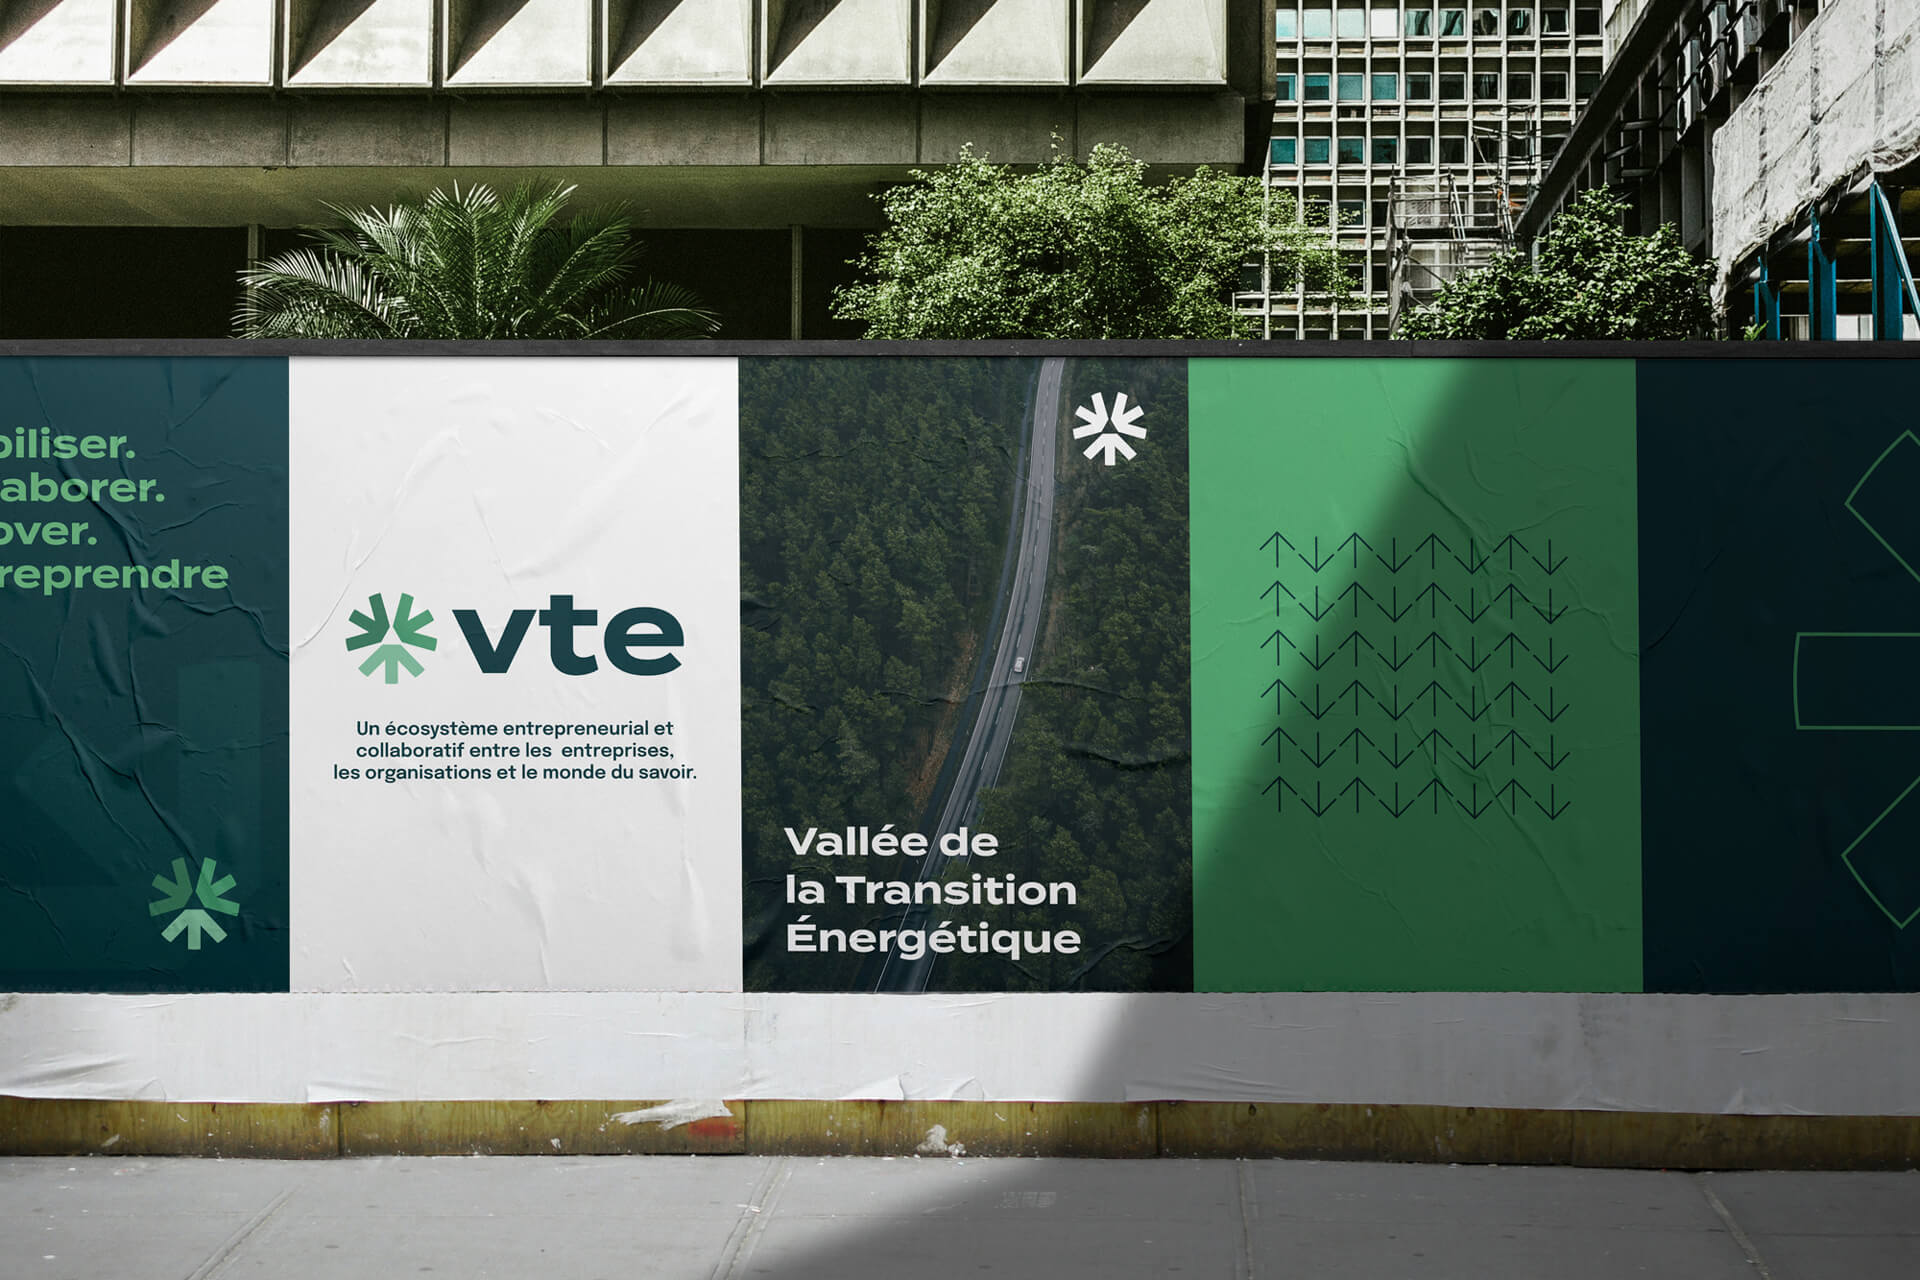 Visuel affiche extérieure Vallée de la Transition Energétique